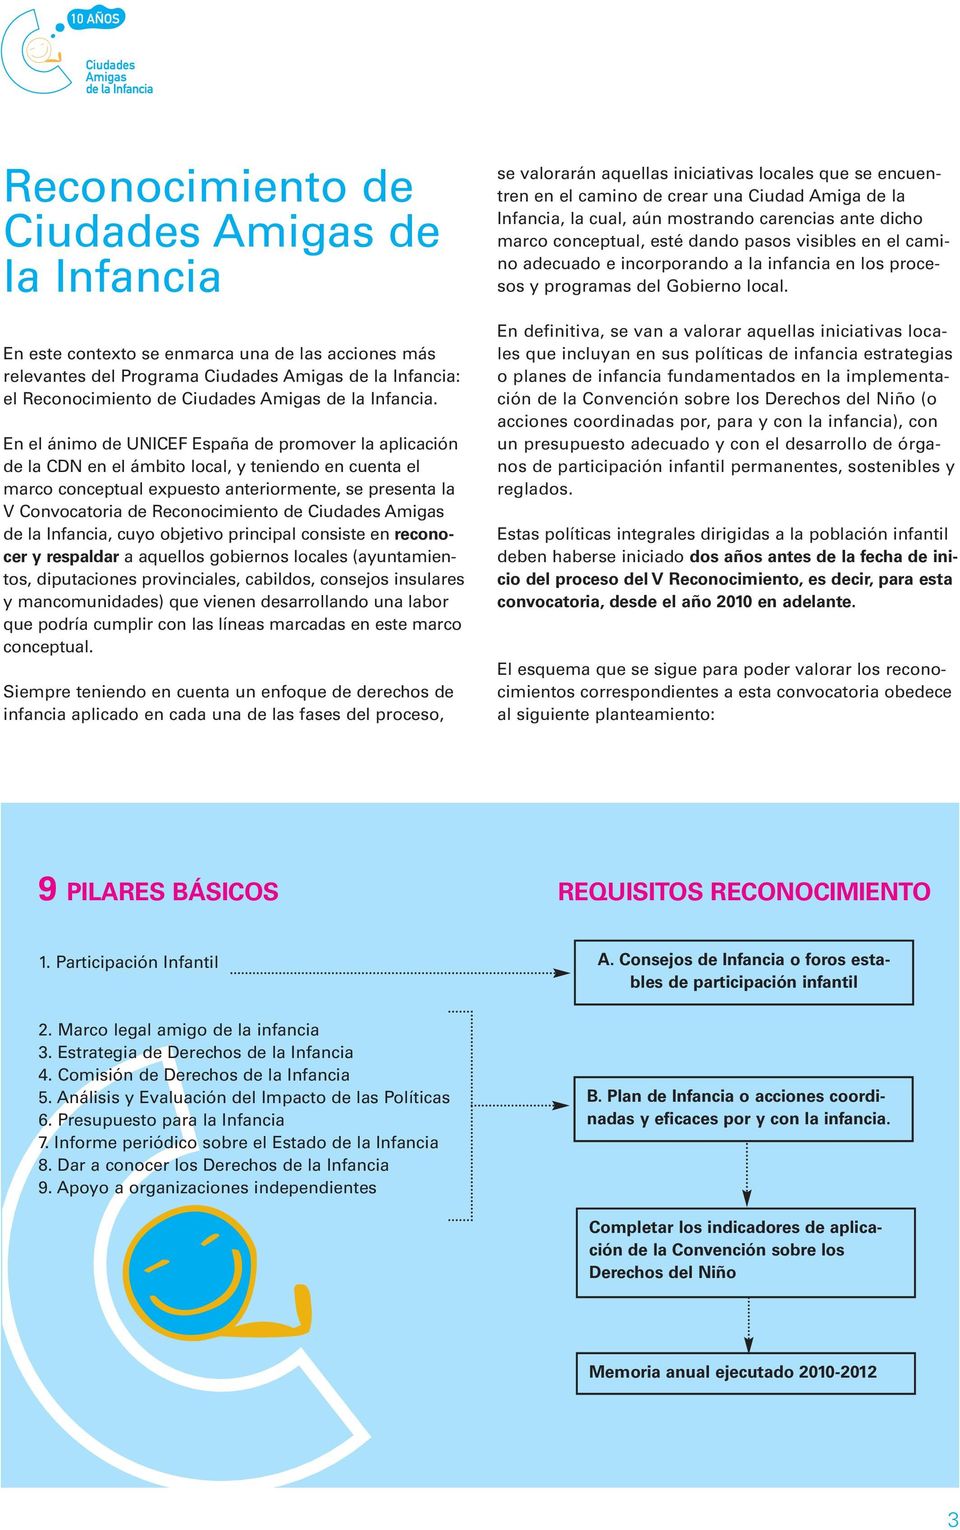 En el ánimo de UNICEF España de promover la aplicación de la CDN en el ámbito local, y teniendo en cuenta el marco conceptual expuesto anteriormente, se presenta la V Convocatoria de Reconocimiento